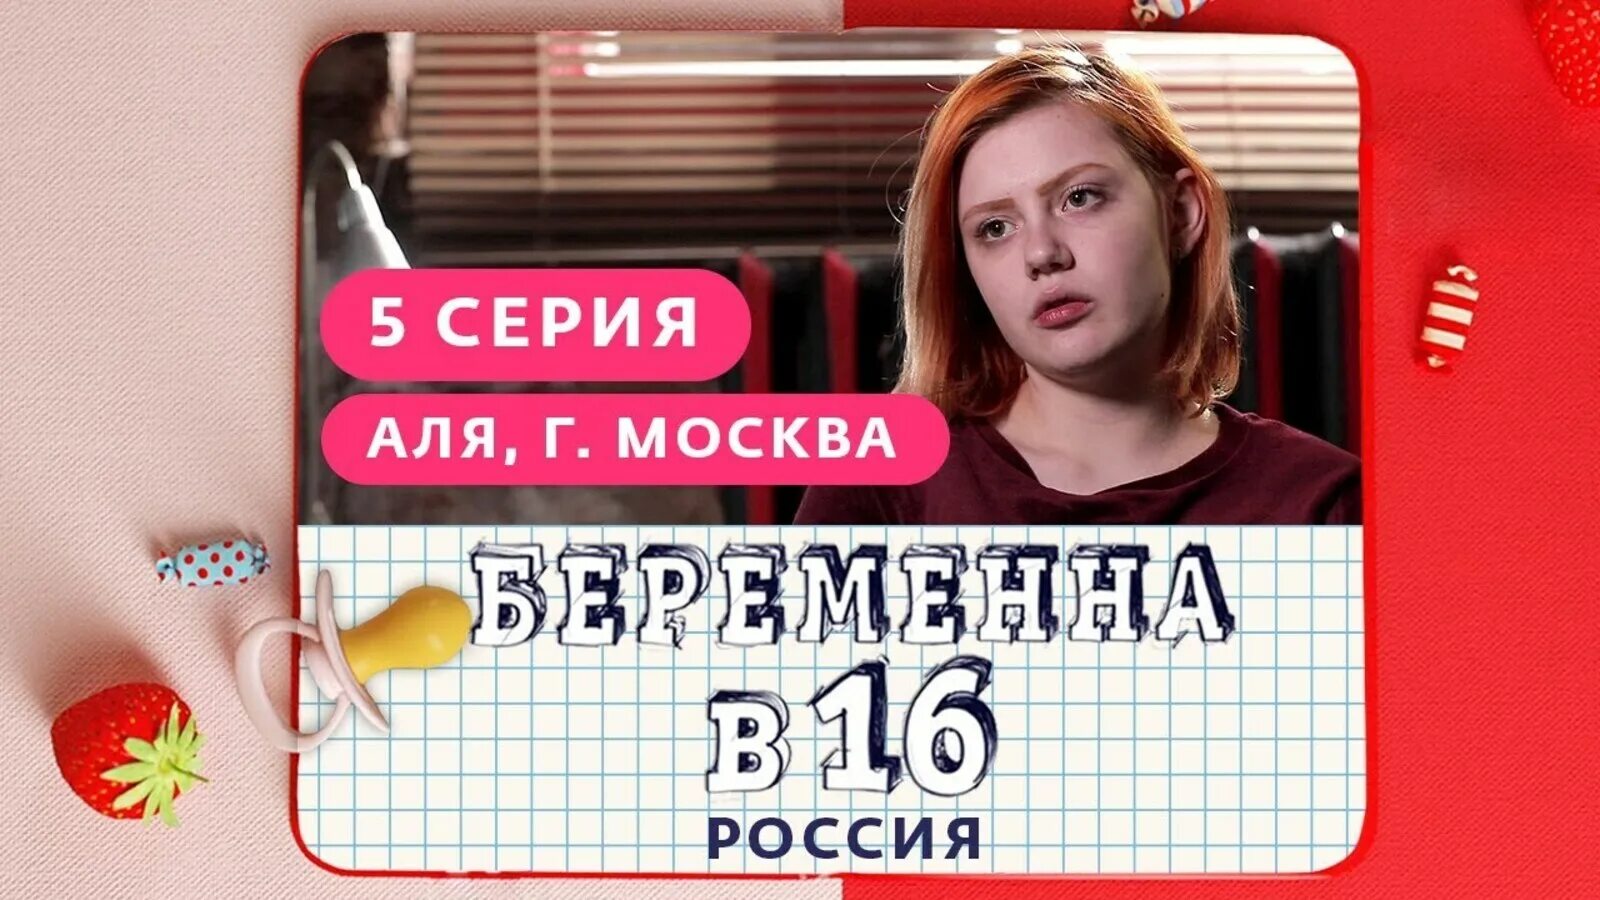 Мама в 16 телеканал ю новые. Беременна в 16. Беременна в 16 Россия. Беременна в 16 зпстпвка.